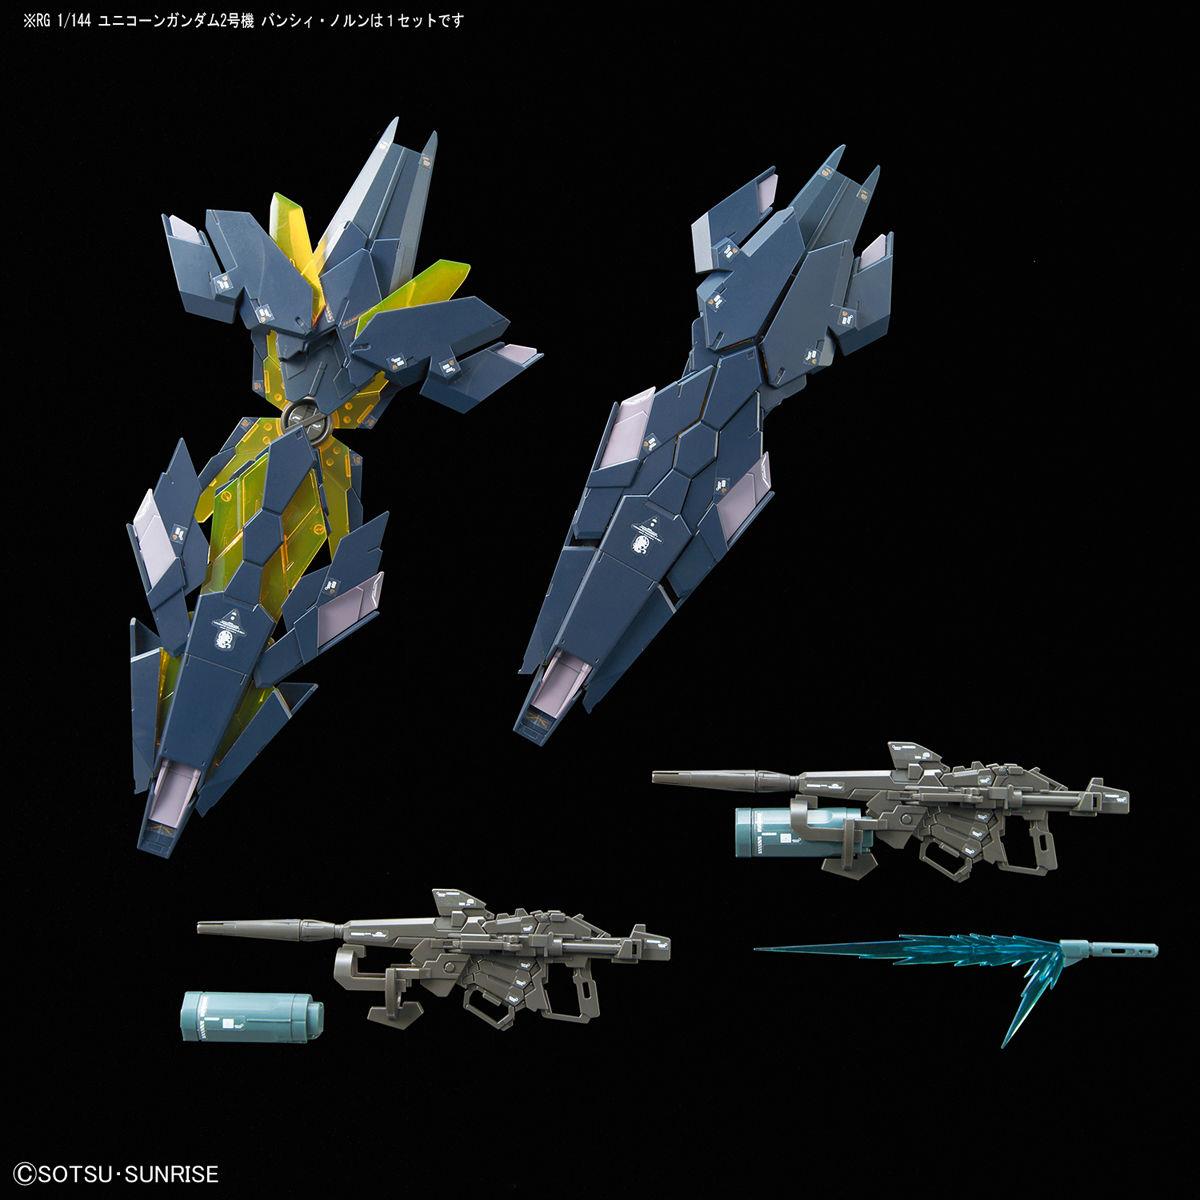 Gundam: Unicorn Gundam 02 Banshee Norn RG Model